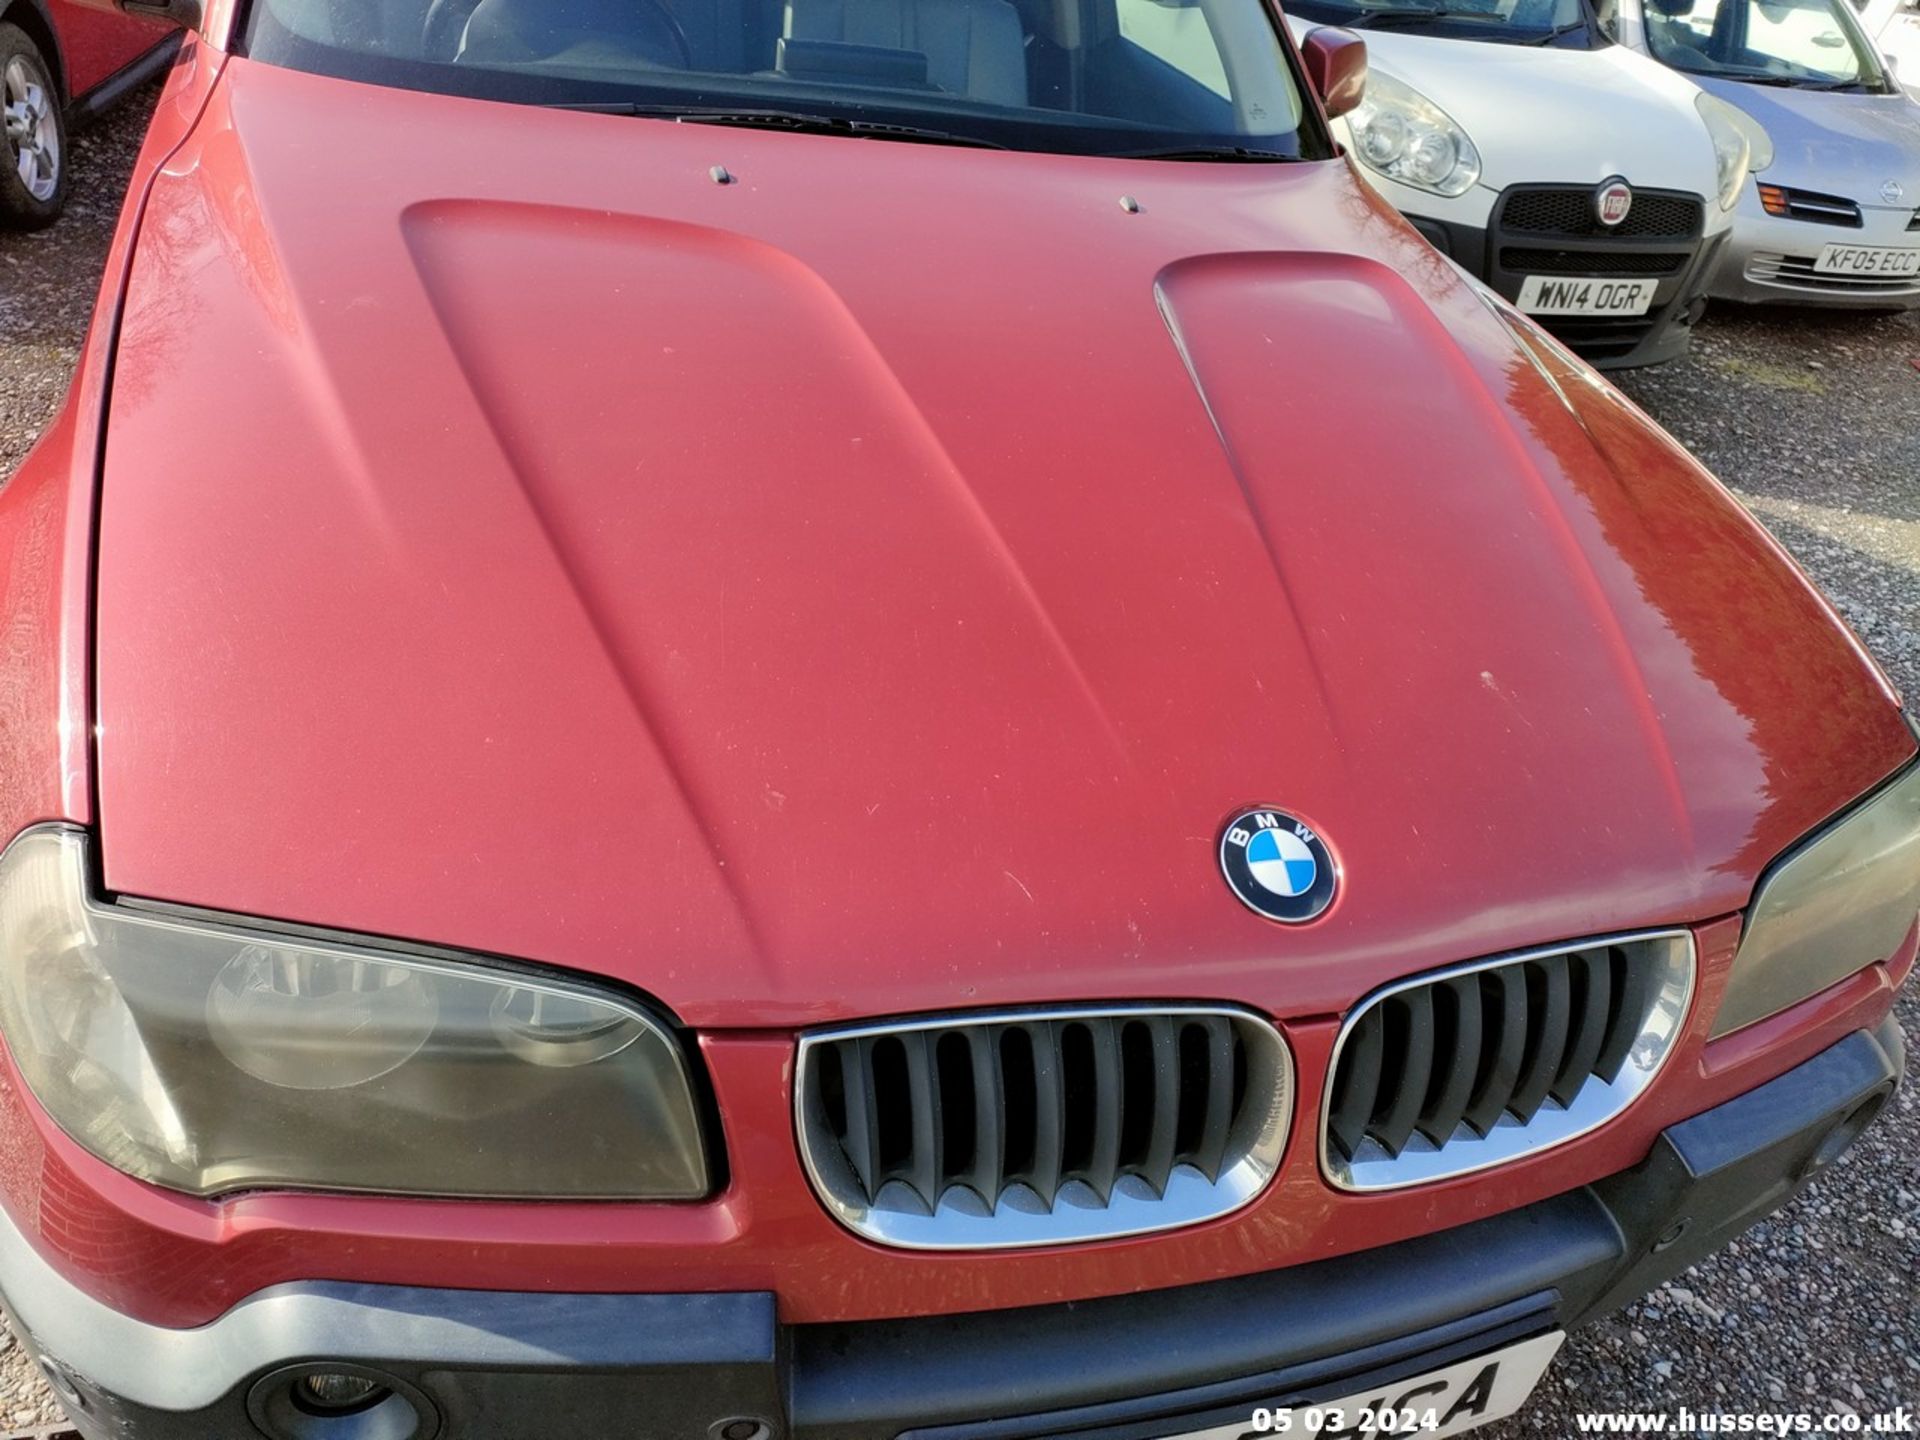 05/55 BMW X3 D SE - 1995cc 5dr Estate (Red, 188k) - Image 22 of 51